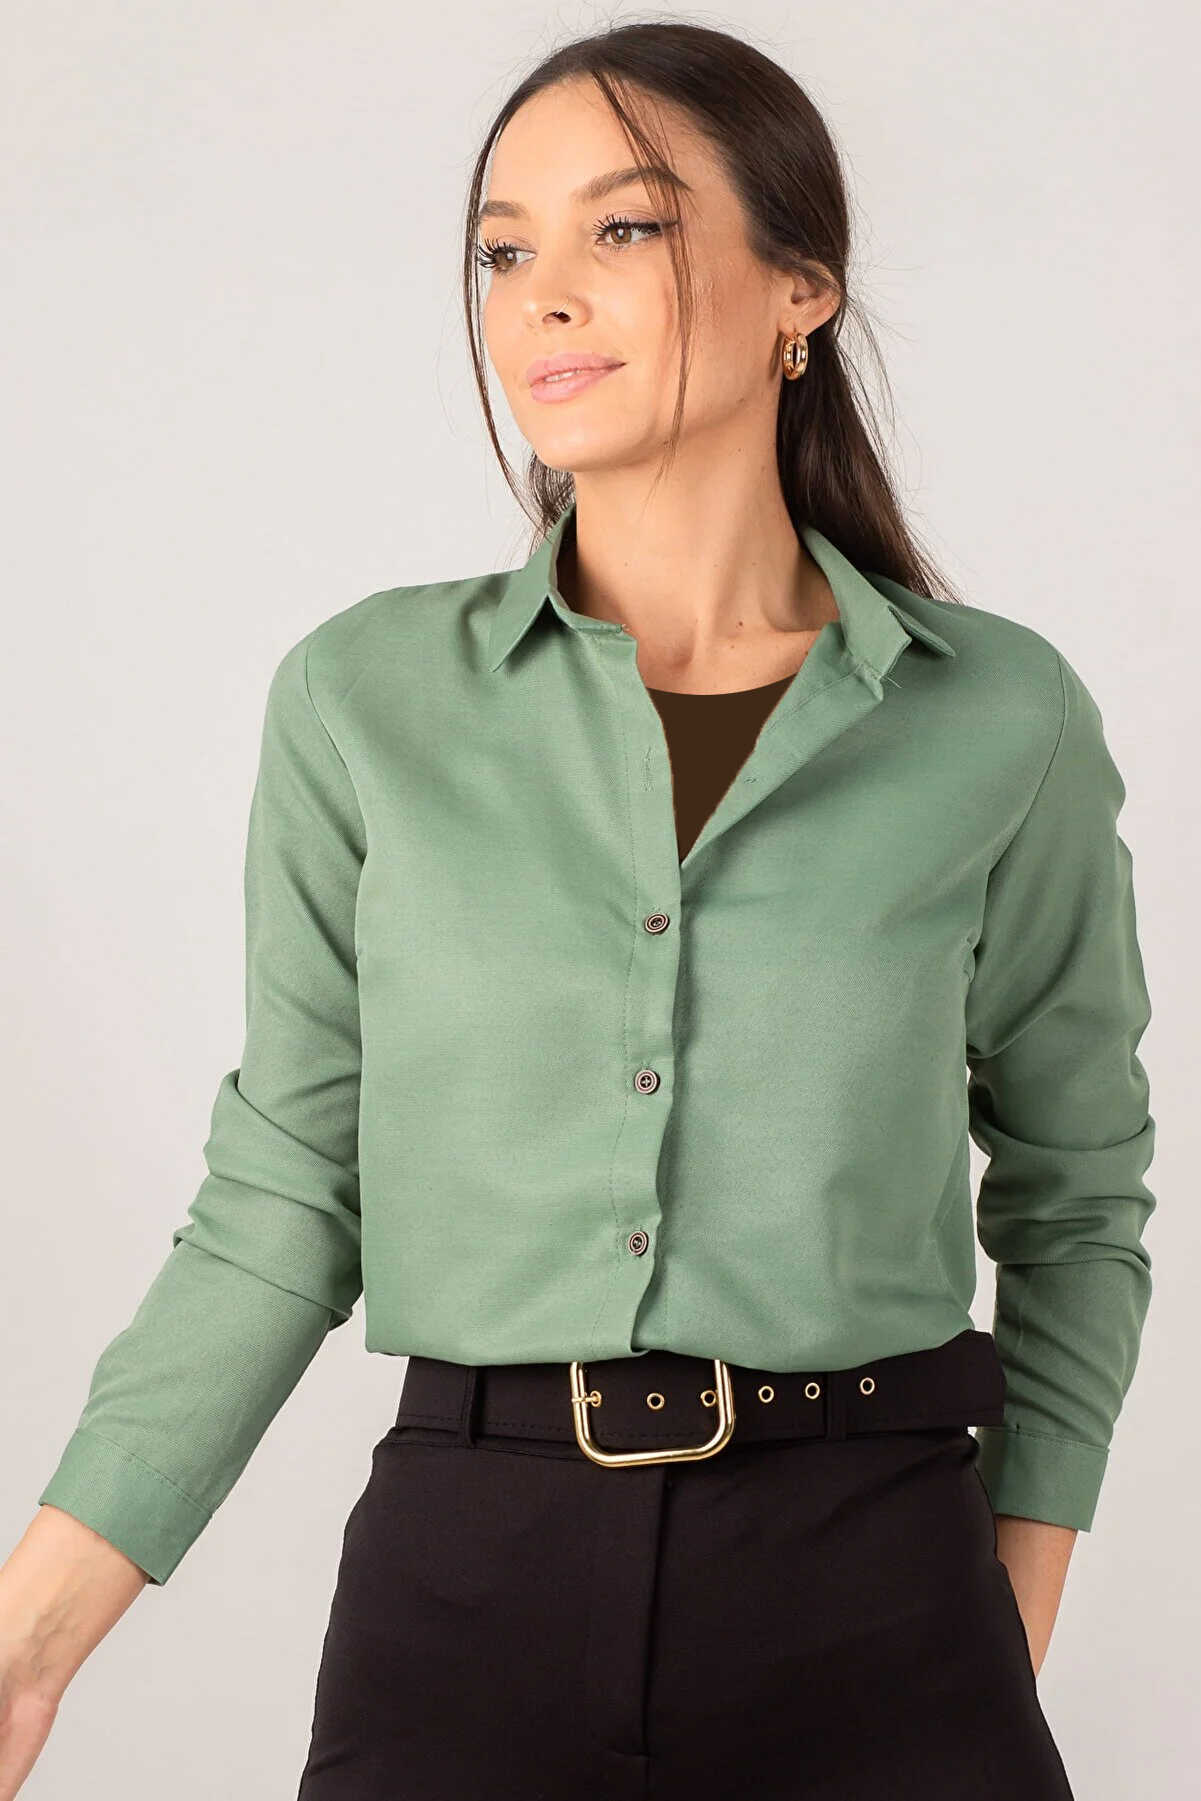 پیراهن زنانه ساده آستین بلند سبز برند armonika